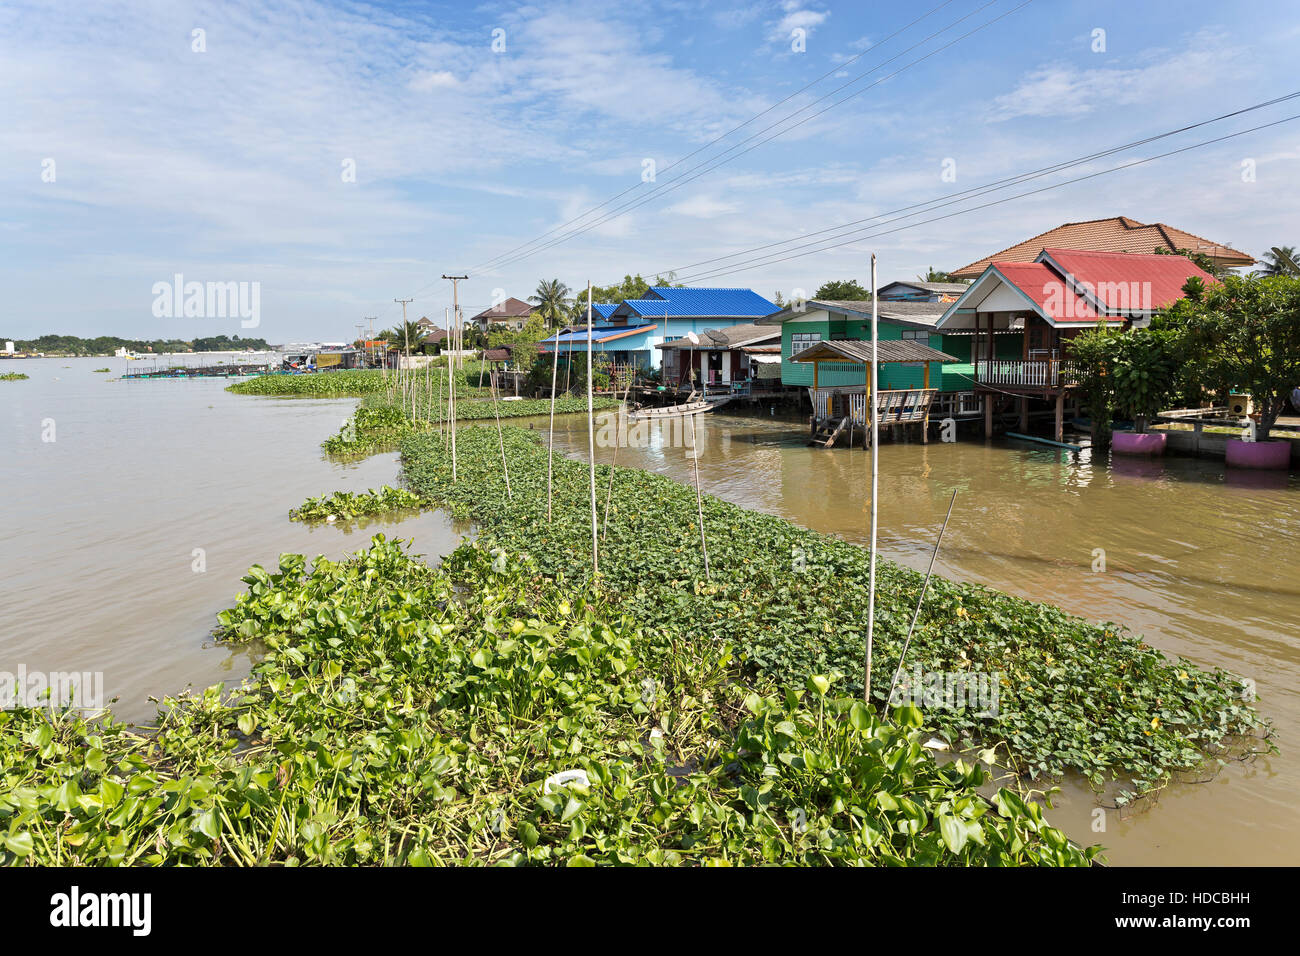 Große Menge verzehrt von Wasserhyazinthen, auch genannt Eichhornia Crassipes, am Ufer od des Chao Phraya River in der Nähe eines Dorfes in Ayutthaya, Thailand Stockfoto